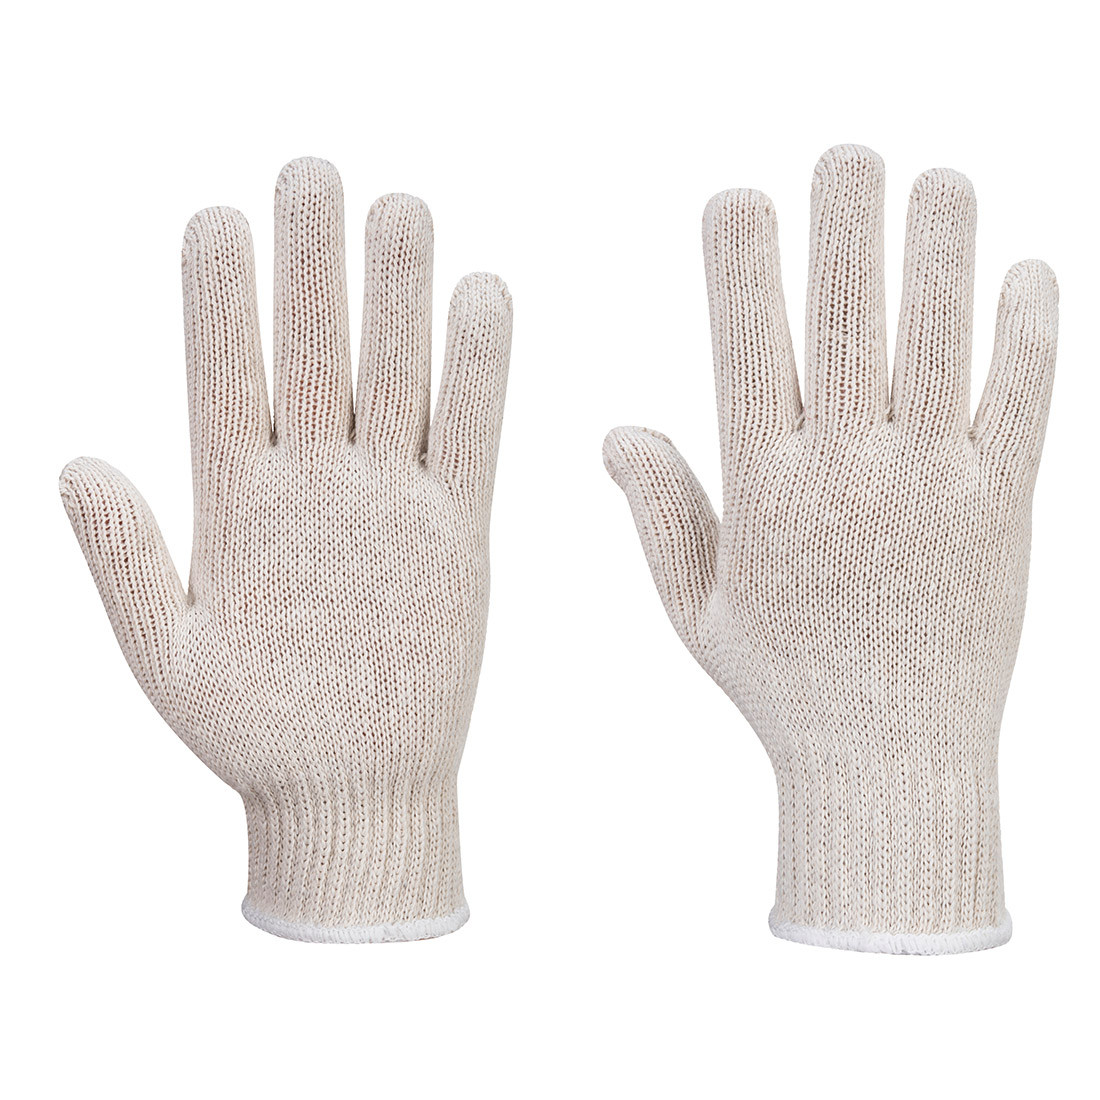 Sous-gants tricot - Les équipements de protection individuelle